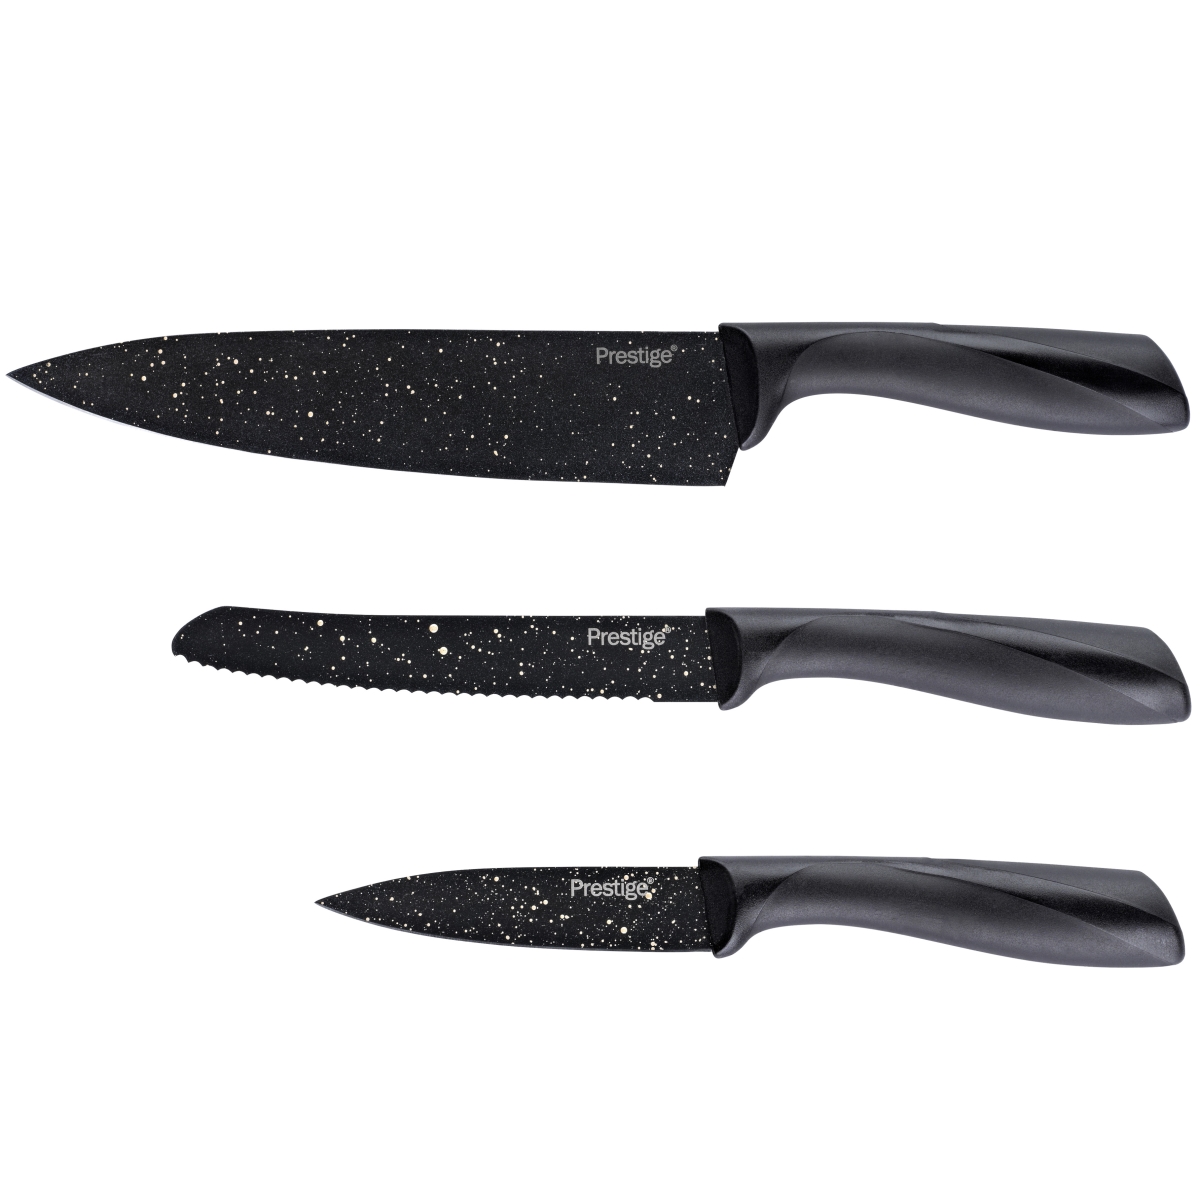 47736 Stone Quartz Nonstick Knife Set - Black & Gold Speckle, 3 Piece